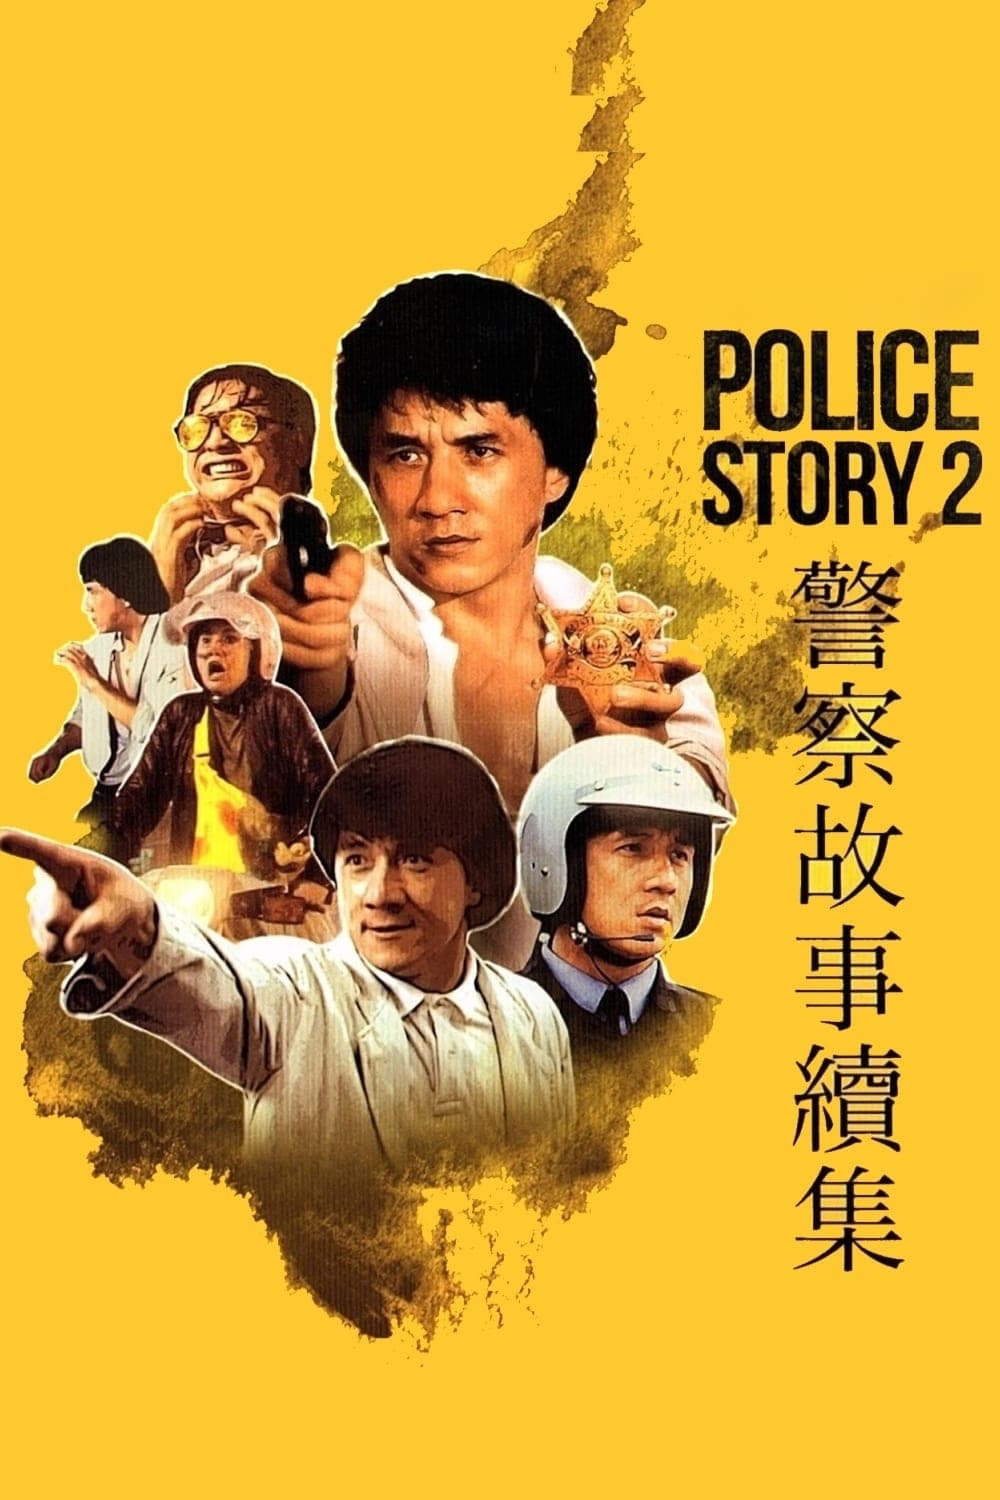 Plakát pro film “Police Story 2”